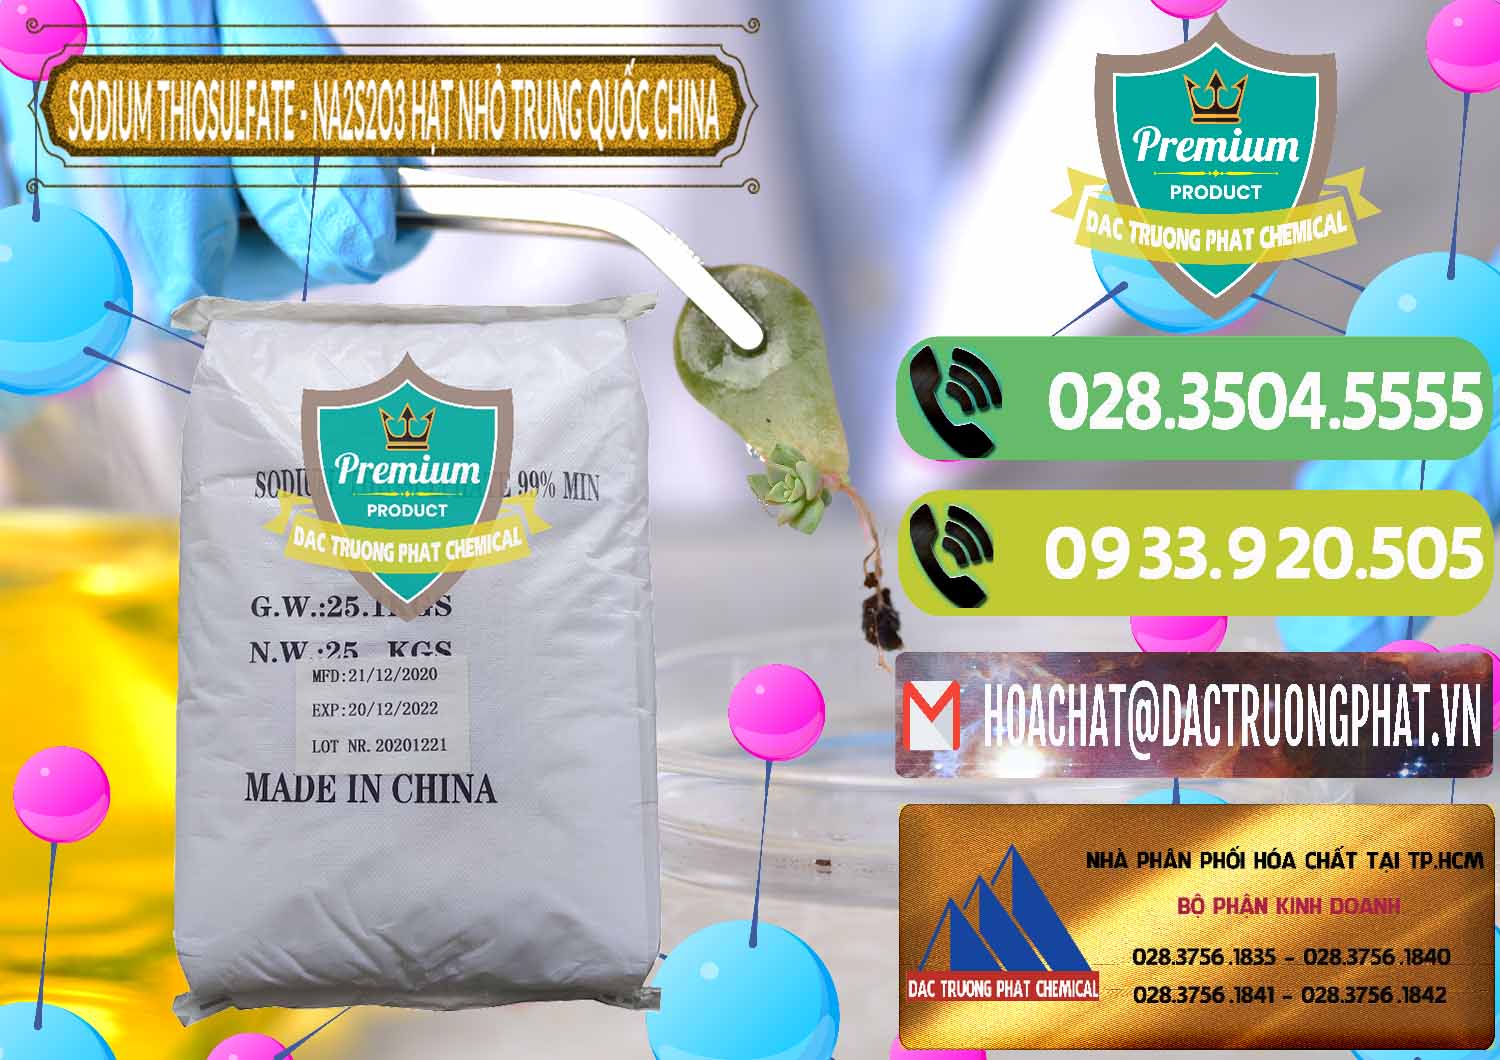 Nơi phân phối và bán Sodium Thiosulfate - NA2S2O3 Hạt Nhỏ Trung Quốc China - 0204 - Nơi chuyên kinh doanh ( cung cấp ) hóa chất tại TP.HCM - hoachatmientay.vn